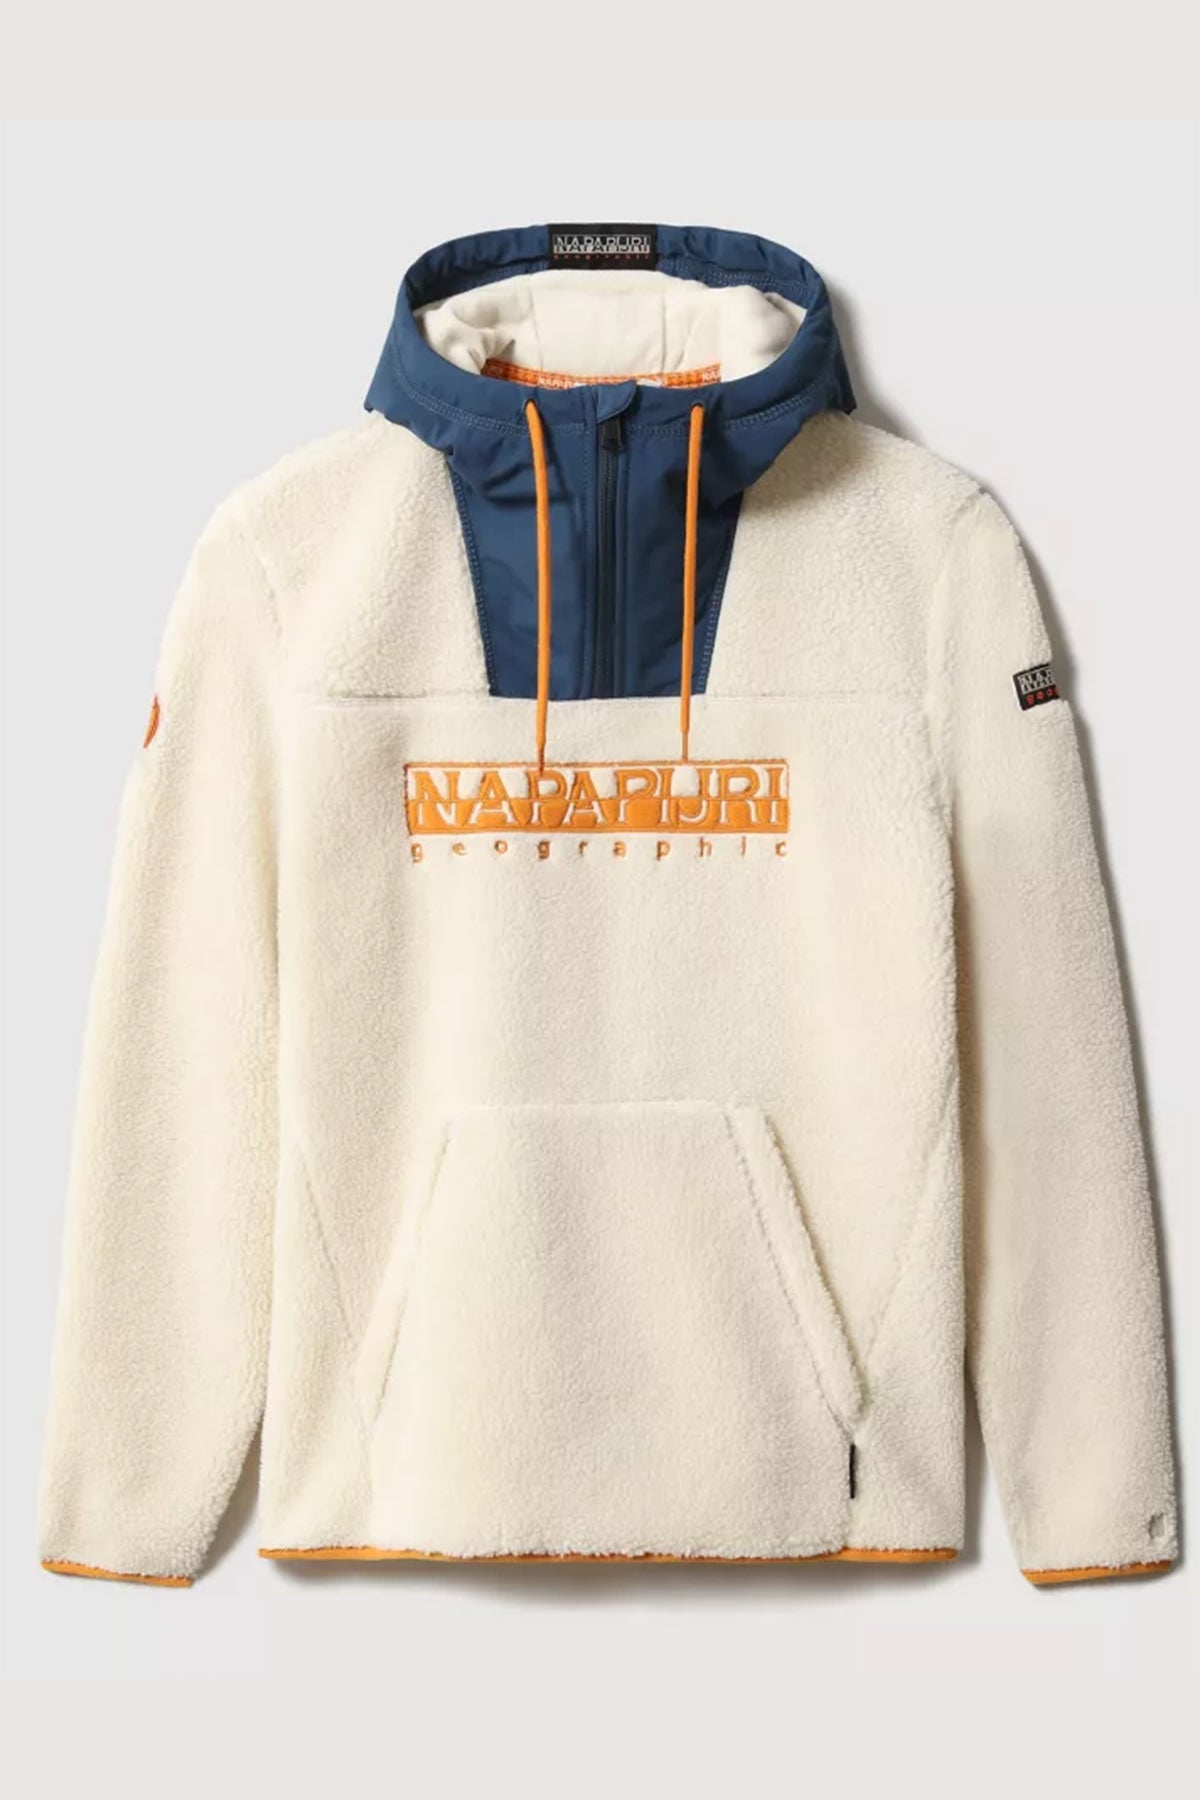 Napapijri Kanguru Cepli Kapüşonlu Polar Sweatshirt-Libas Trendy Fashion Store